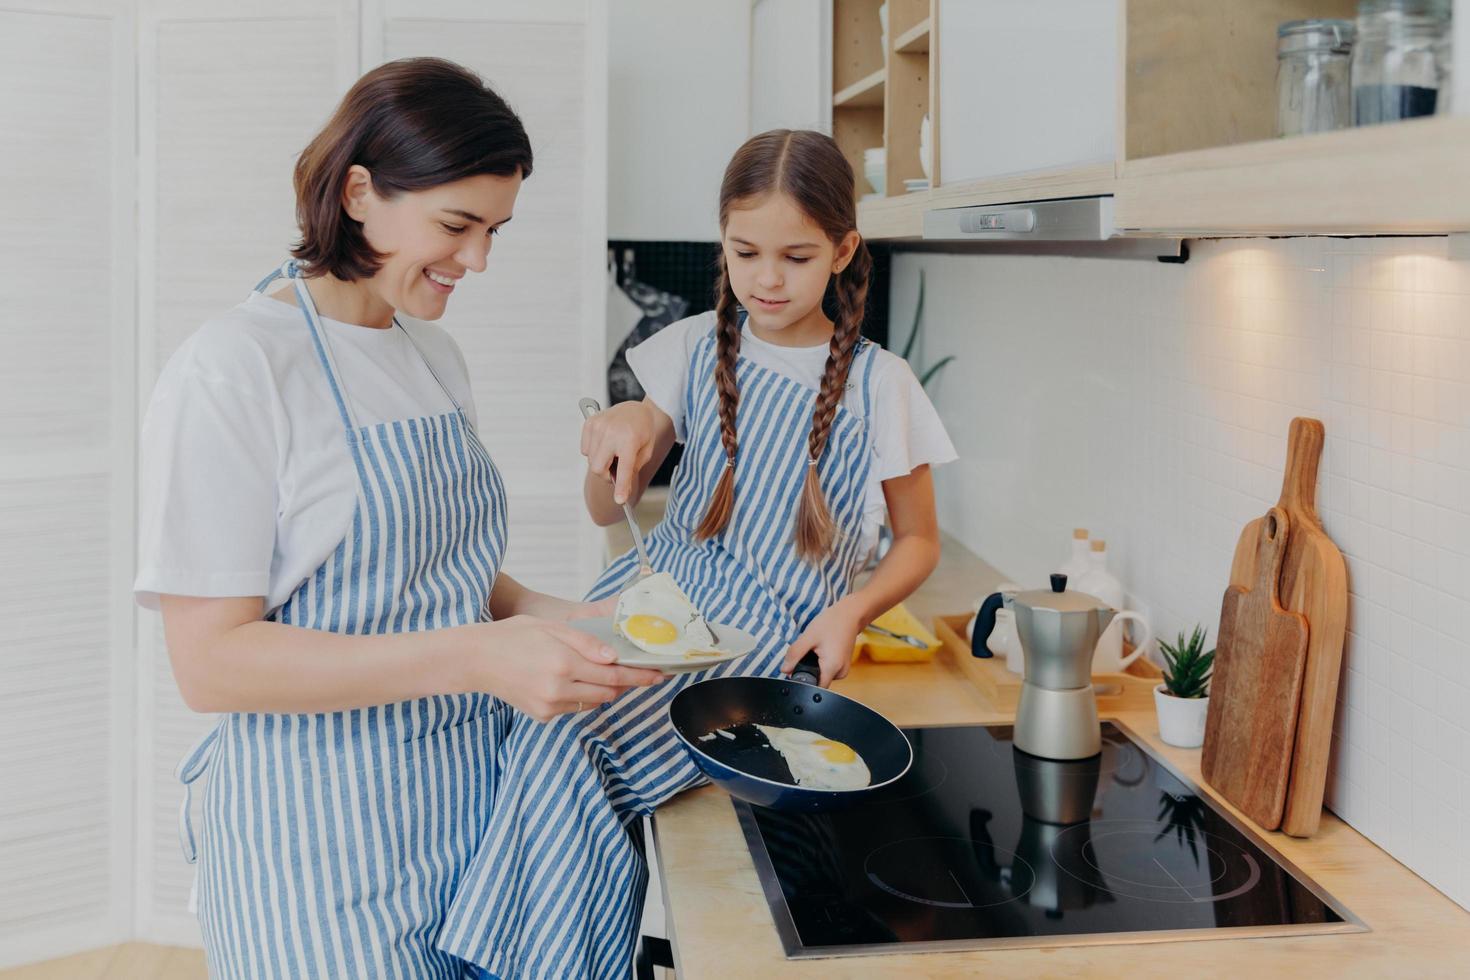 foto av glad upptagen mamma och hennes dotter poserar nära spisen, servera frukost för familjen, steka ägg på stekpanna, bära förkläden, posera i inhemskt kök. mamma lär barnet hur man enkelt förbereder måltid